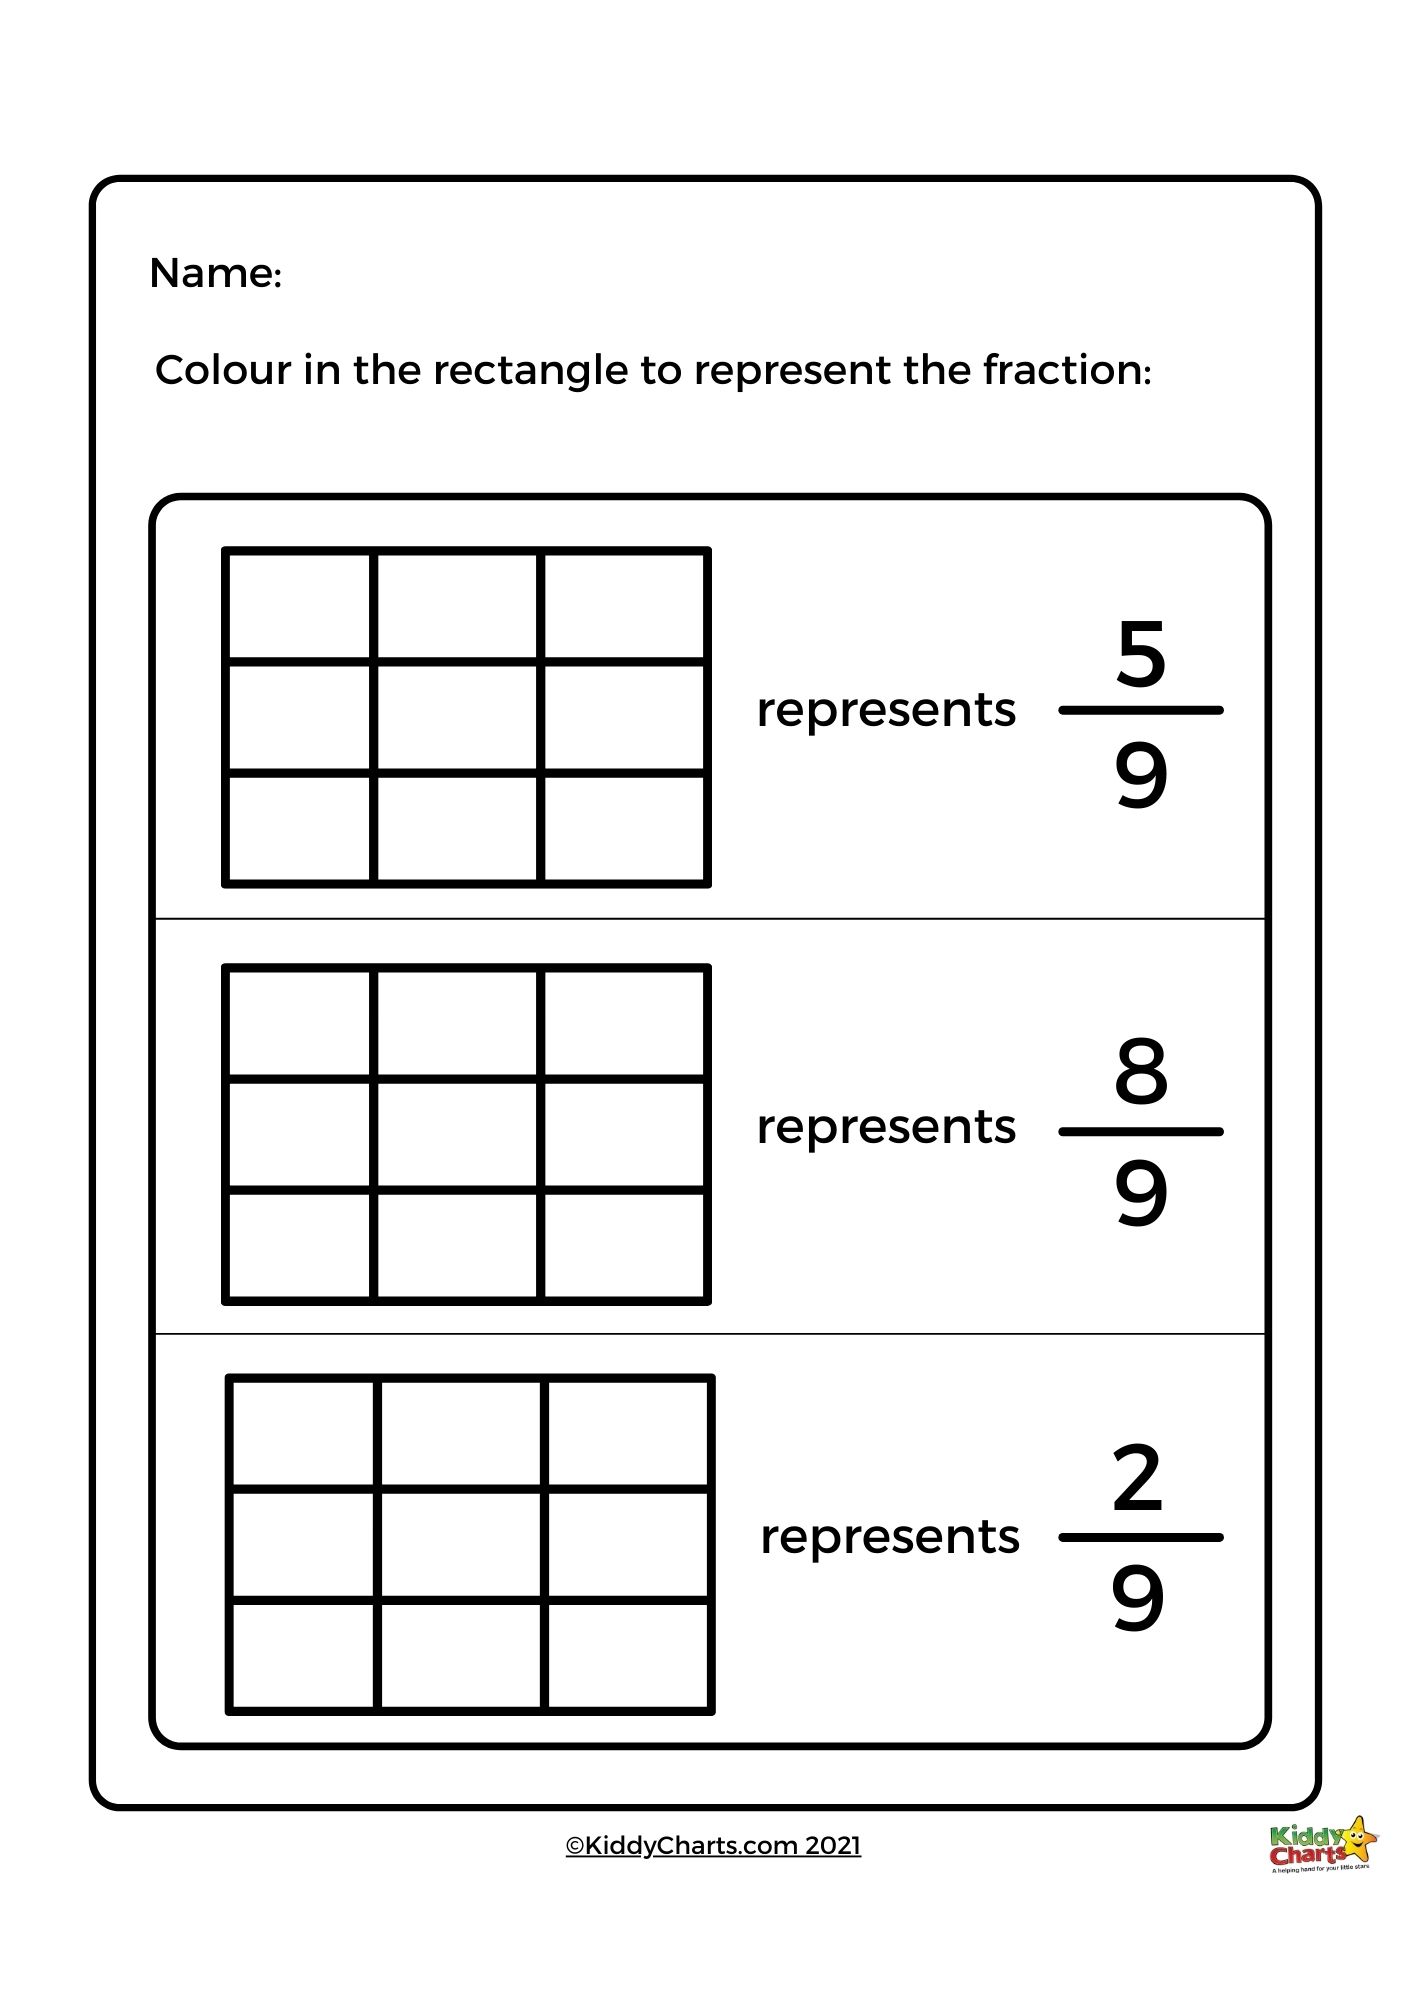 equivalent fractions worksheets kiddycharts shop